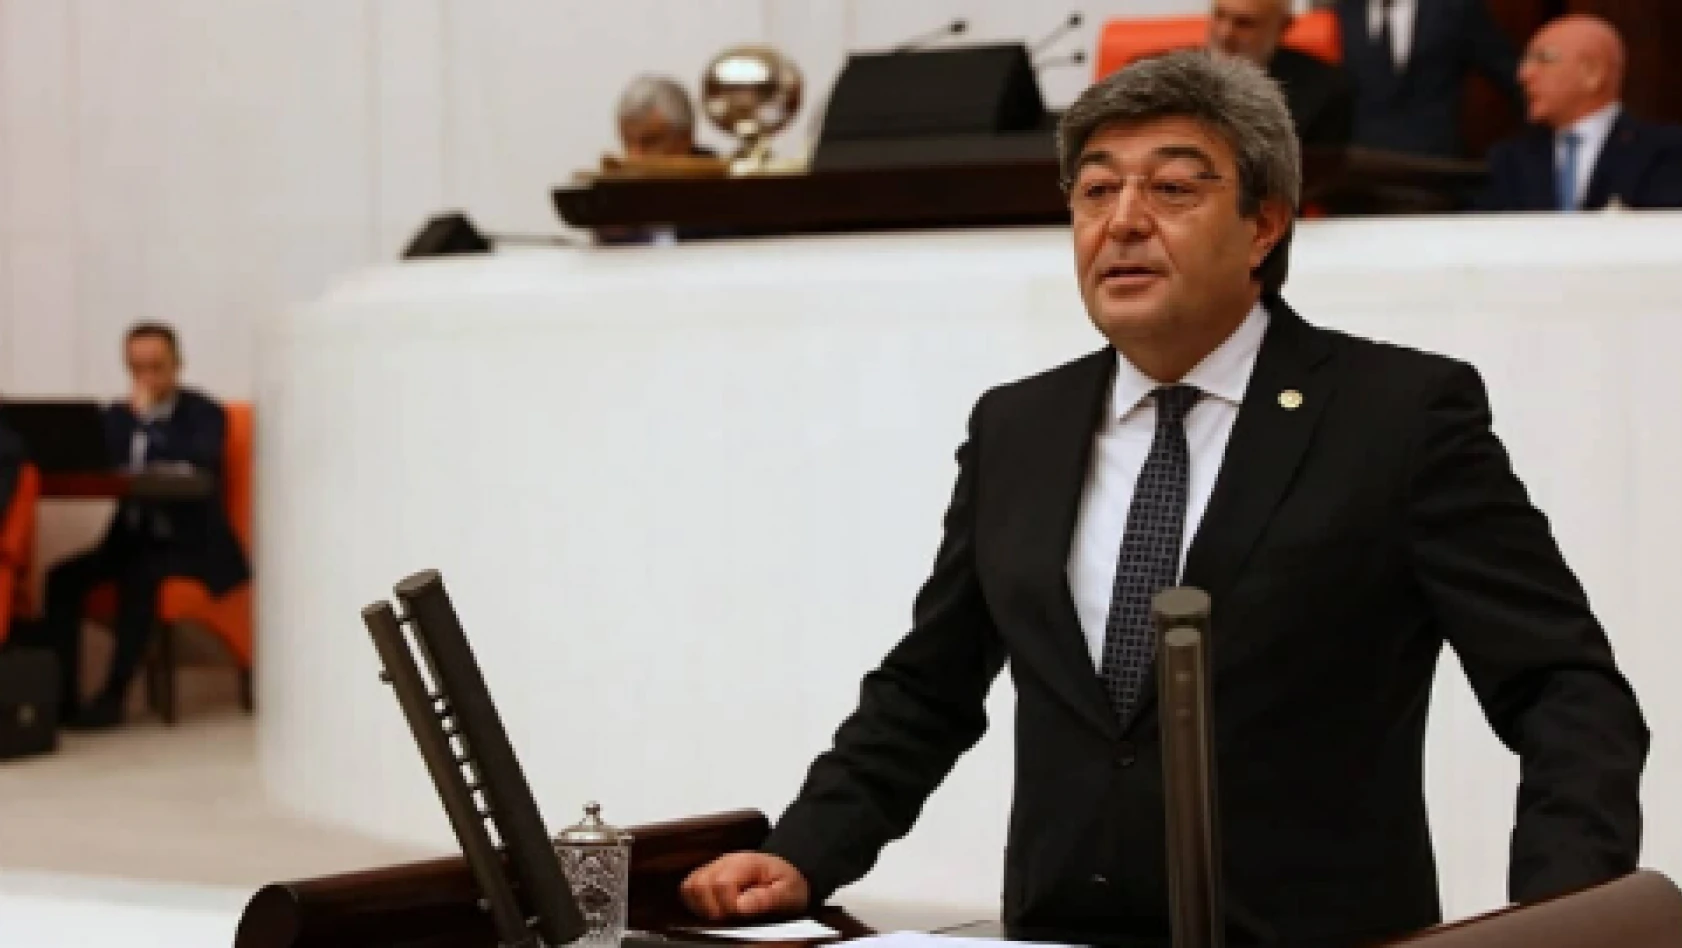  İYİ Parti Milletvekili Dursun Ataş'tan 'Karaborsa' tepkisi